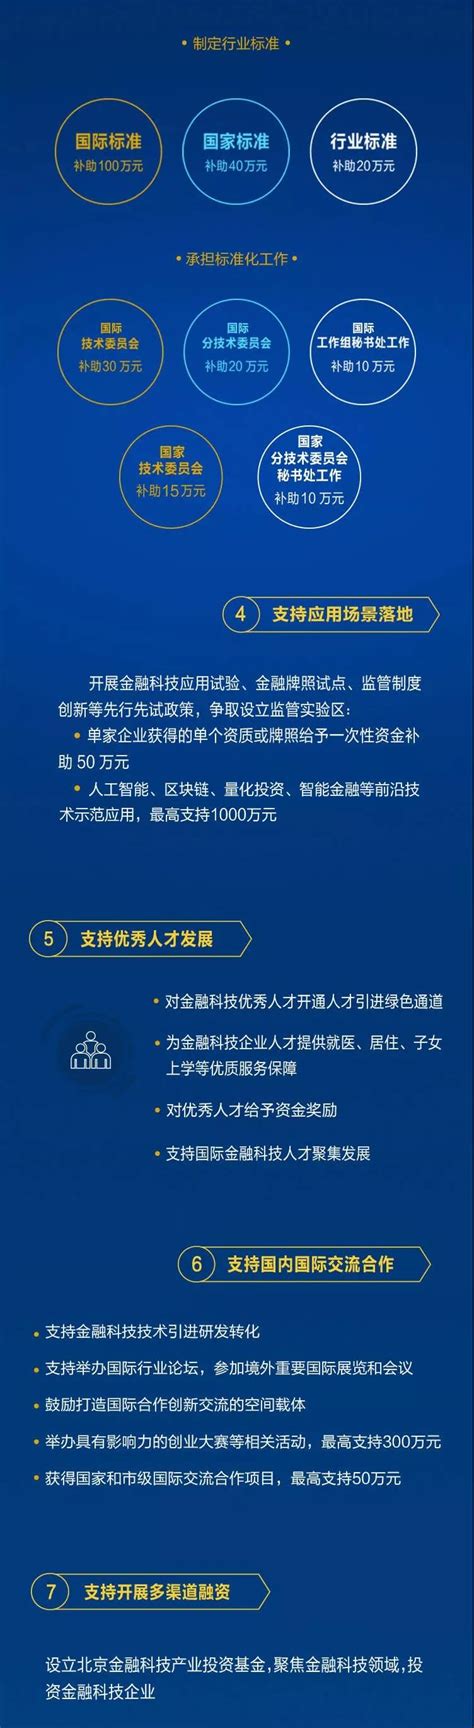 图解《关于支持北京金融科技与专业服务创新示范区（西城区域）建设的若干措施》